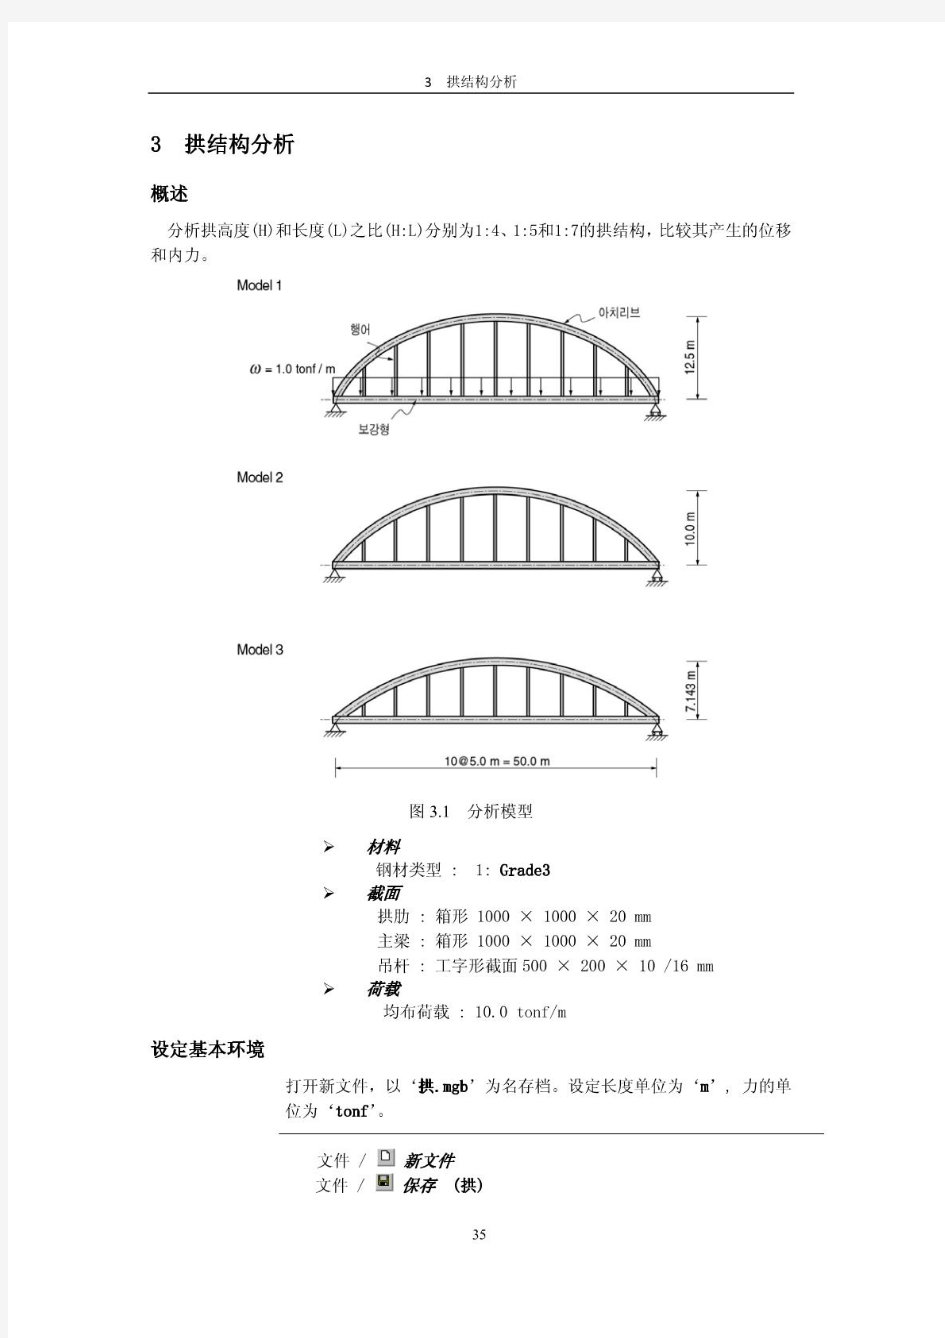 midas 基本操作 拱结构分析(17分之3)